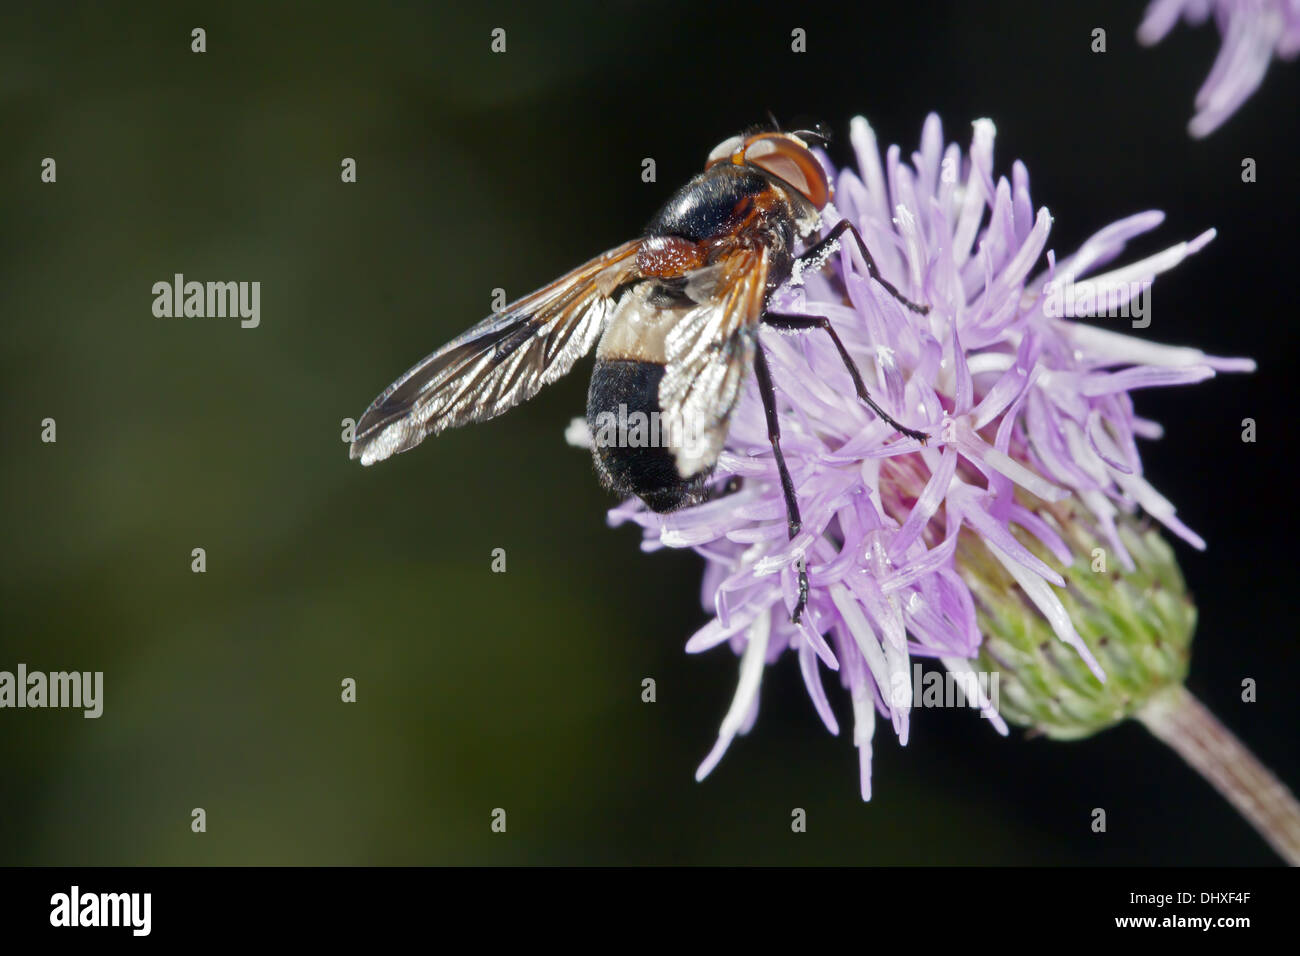 Leucozona lucorum, Hover Fly species Stock Photo